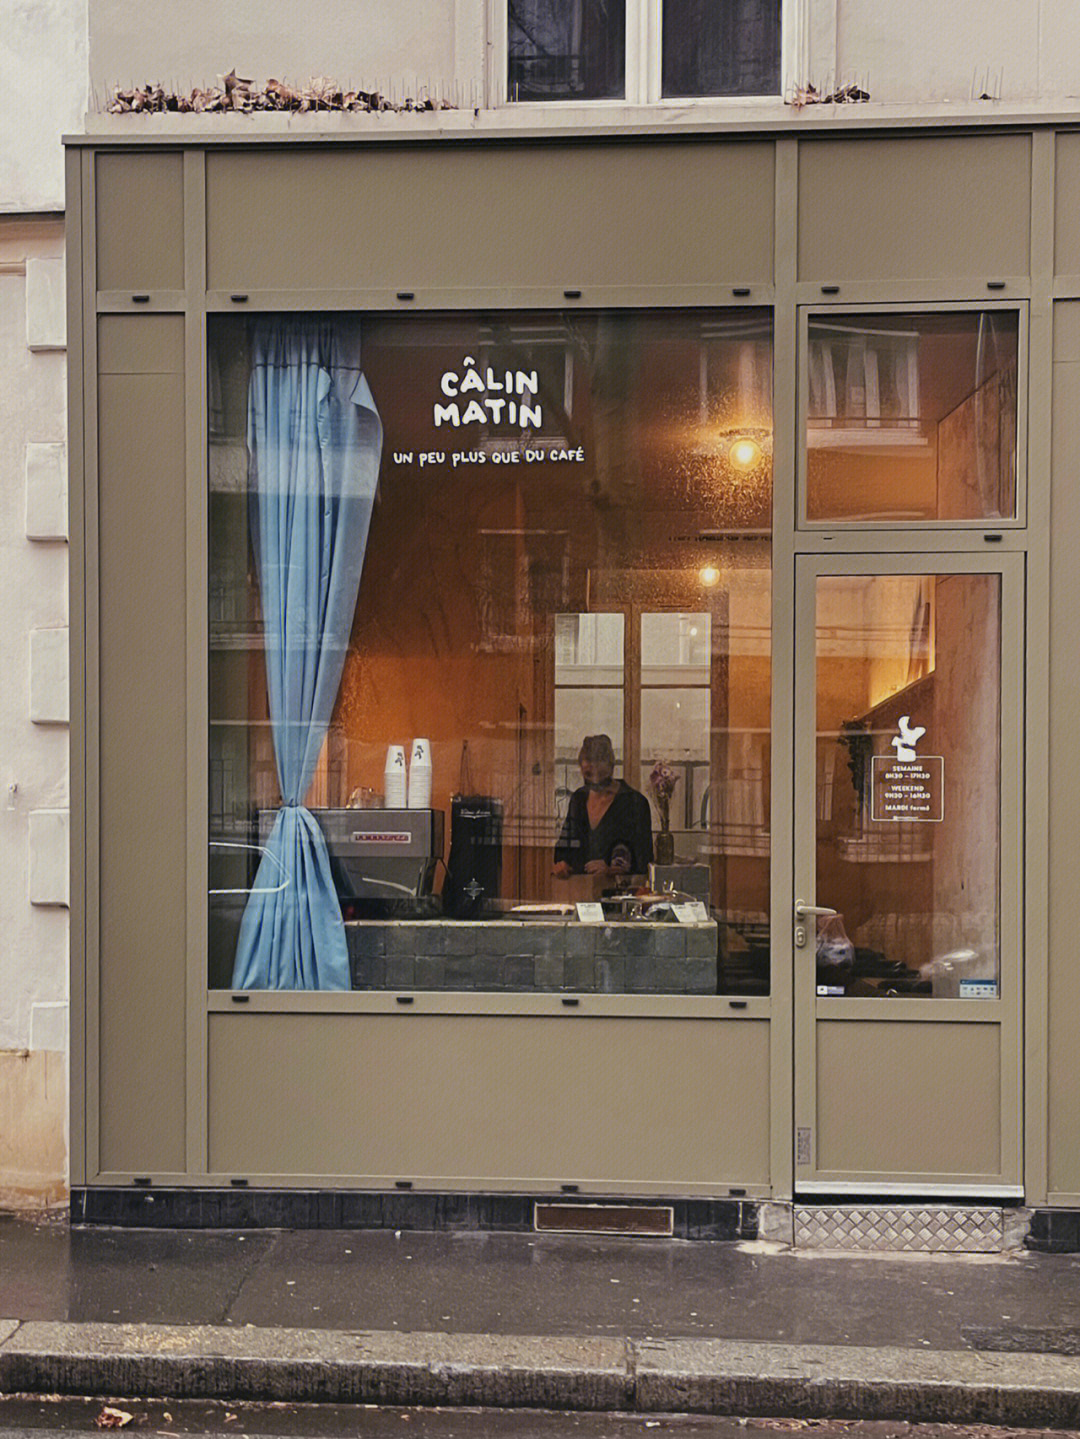 巴黎探店可爱咖啡厅c09linmatin